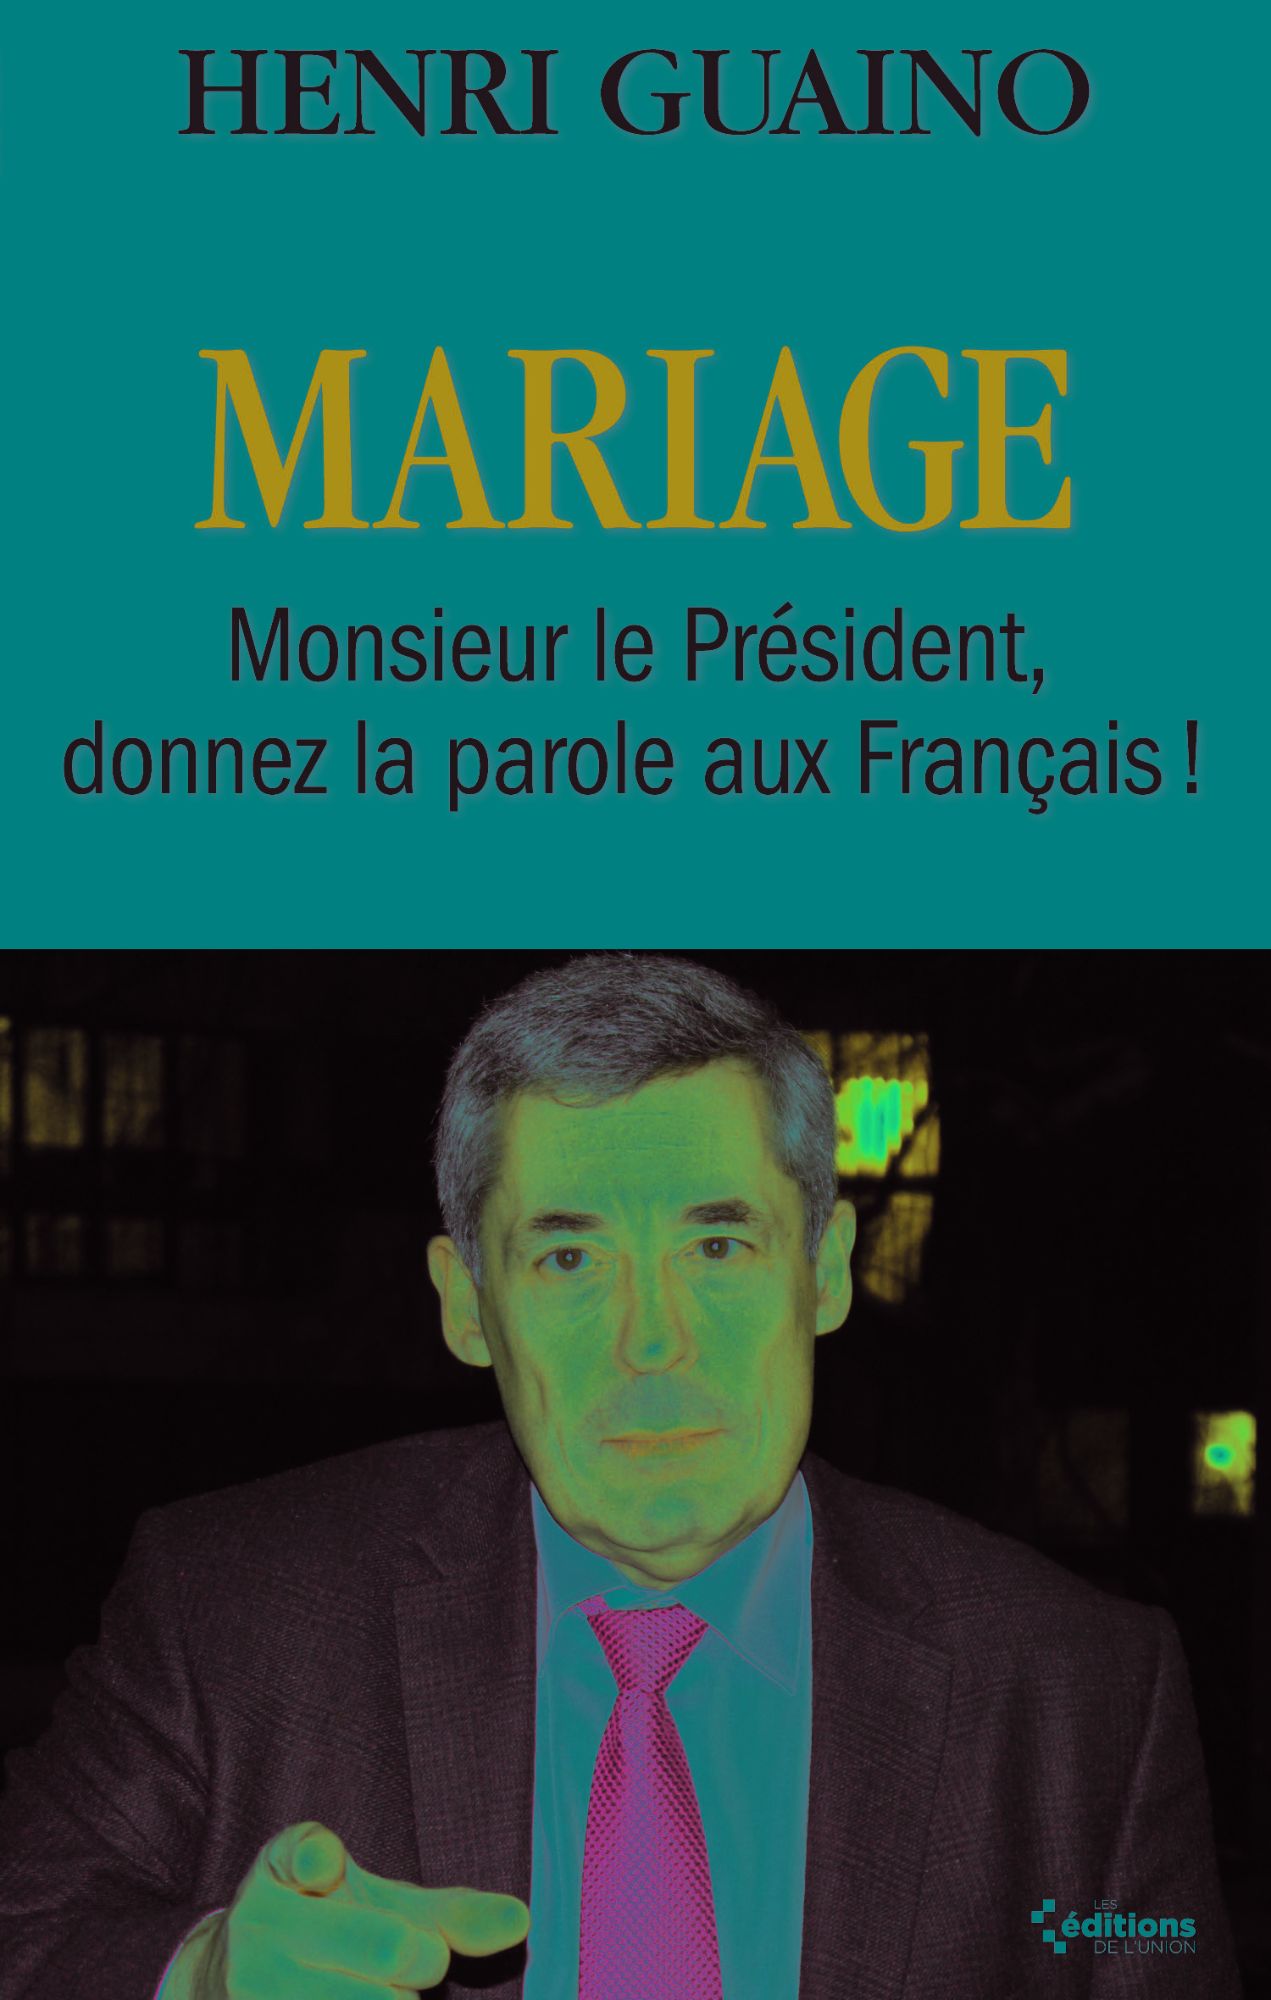 Mariage Monsieur le Président donnez la parole aux Français !